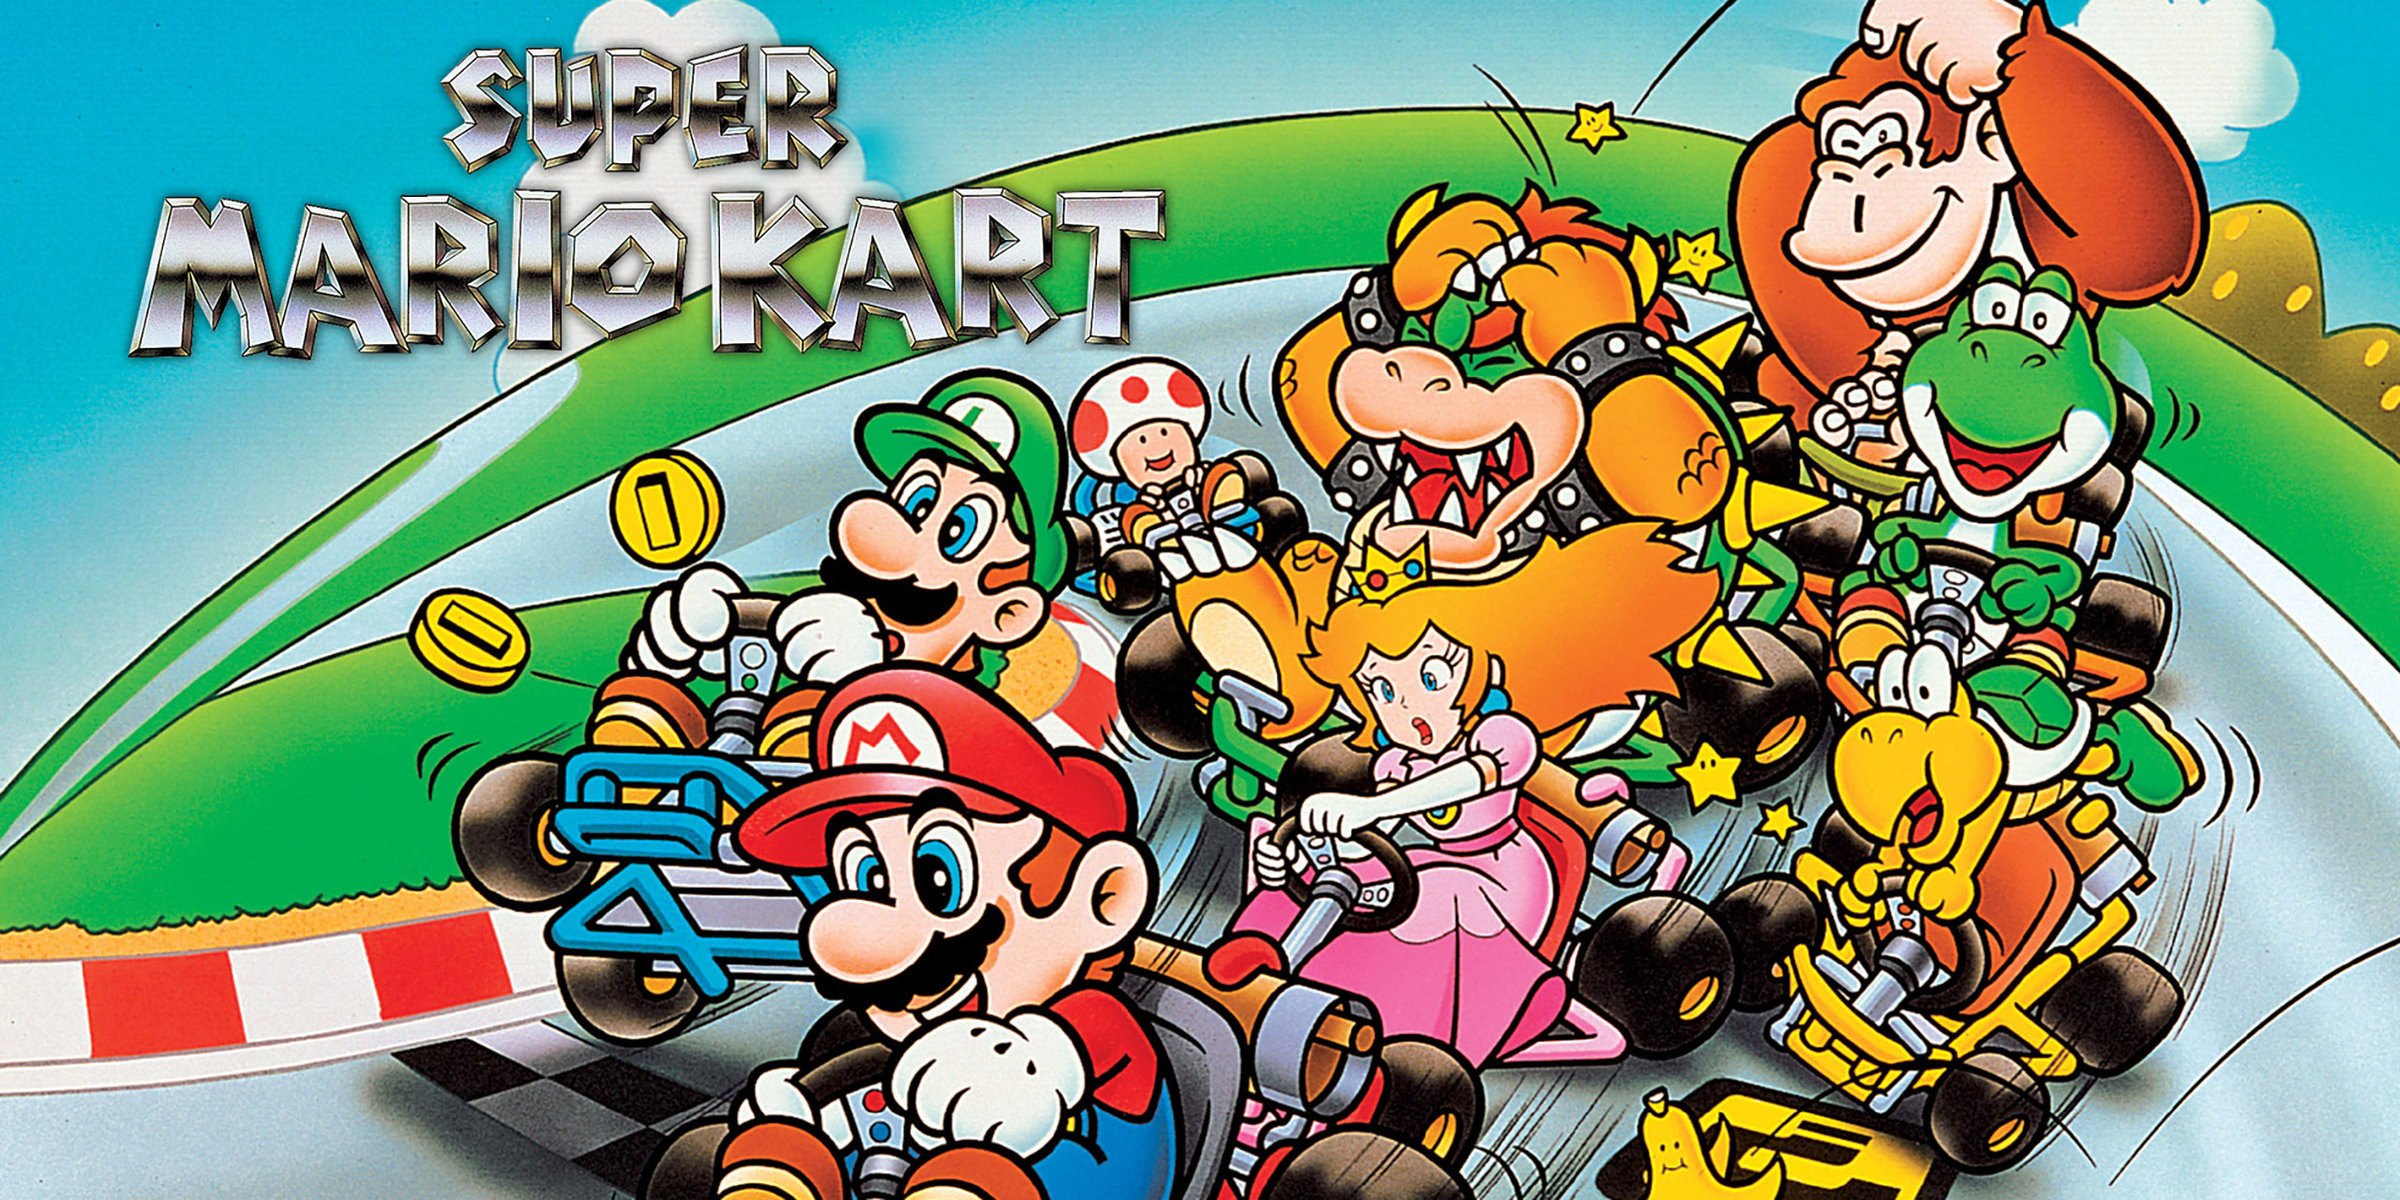 Relembre a história da série Mario Kart